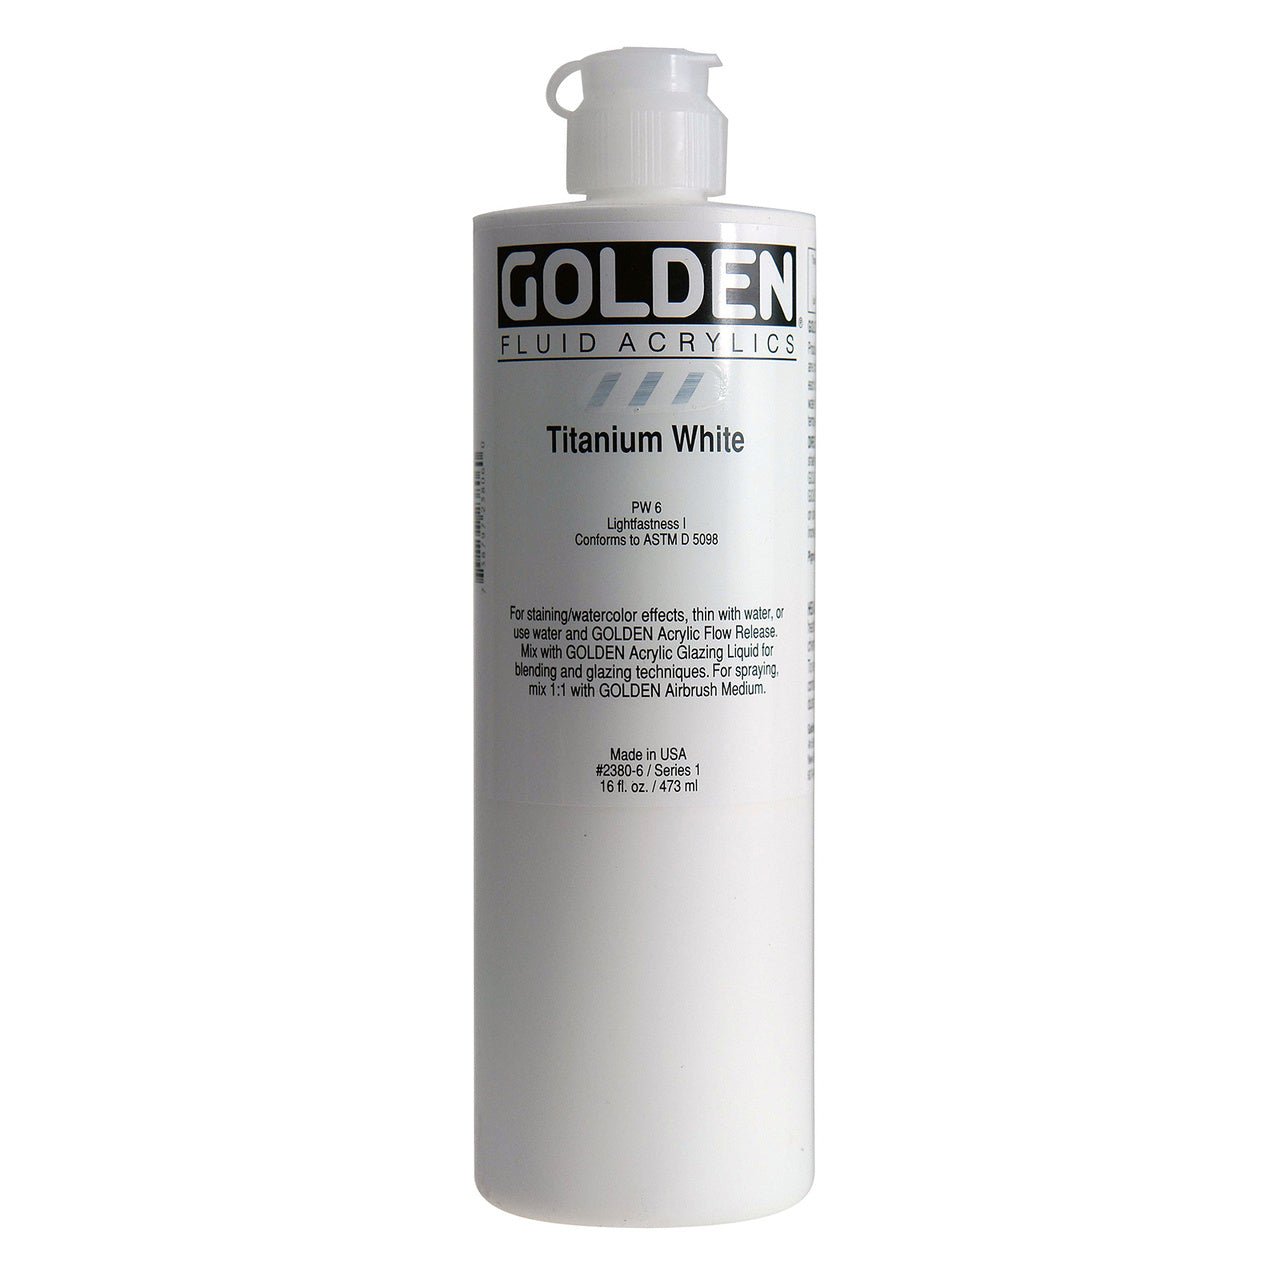 Golden Fluid Acrylic Titanium White 16 oz - merriartist.com